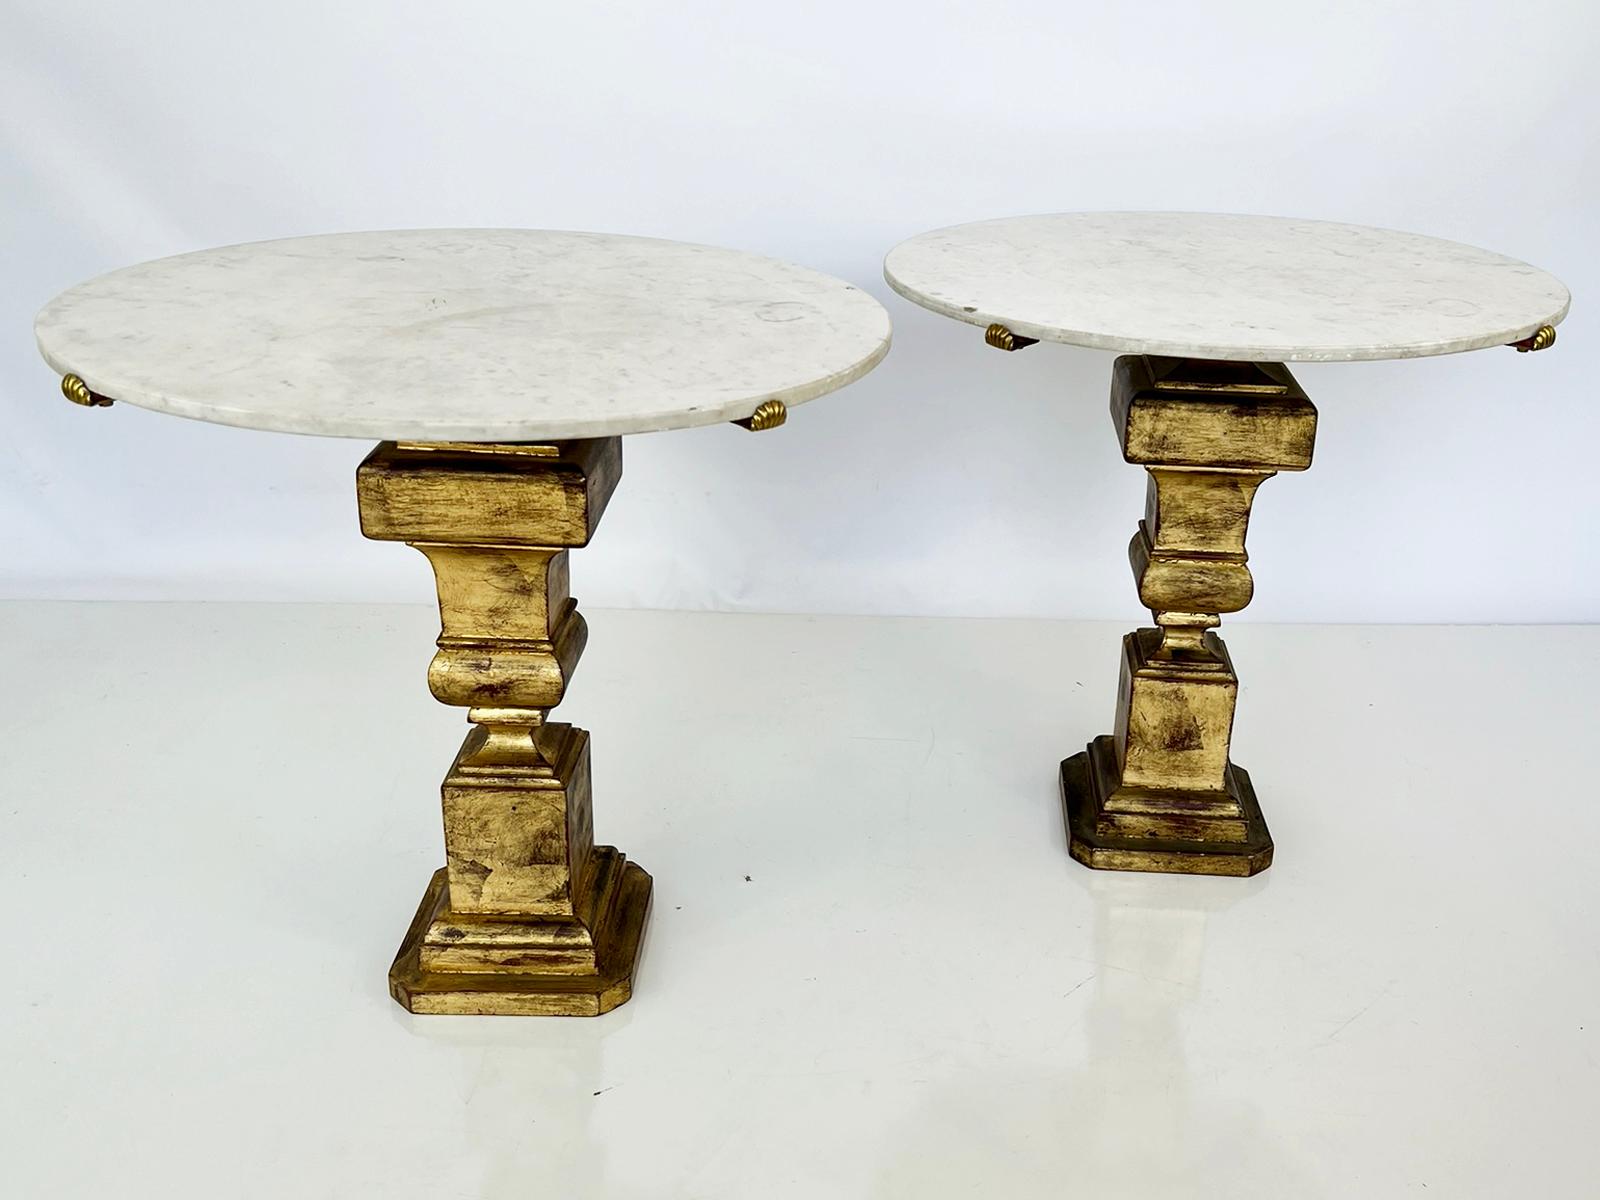 Ein Paar Beistelltische des italienischen Designhauses Palladio. Jeder Tisch hat eine runde Platte aus Carrara-Marmor, die von Muschelschalen-Clips aus Messing gehalten wird. Die Sockel aus vergoldetem Metall mit quadratischem Querschnitt in Form